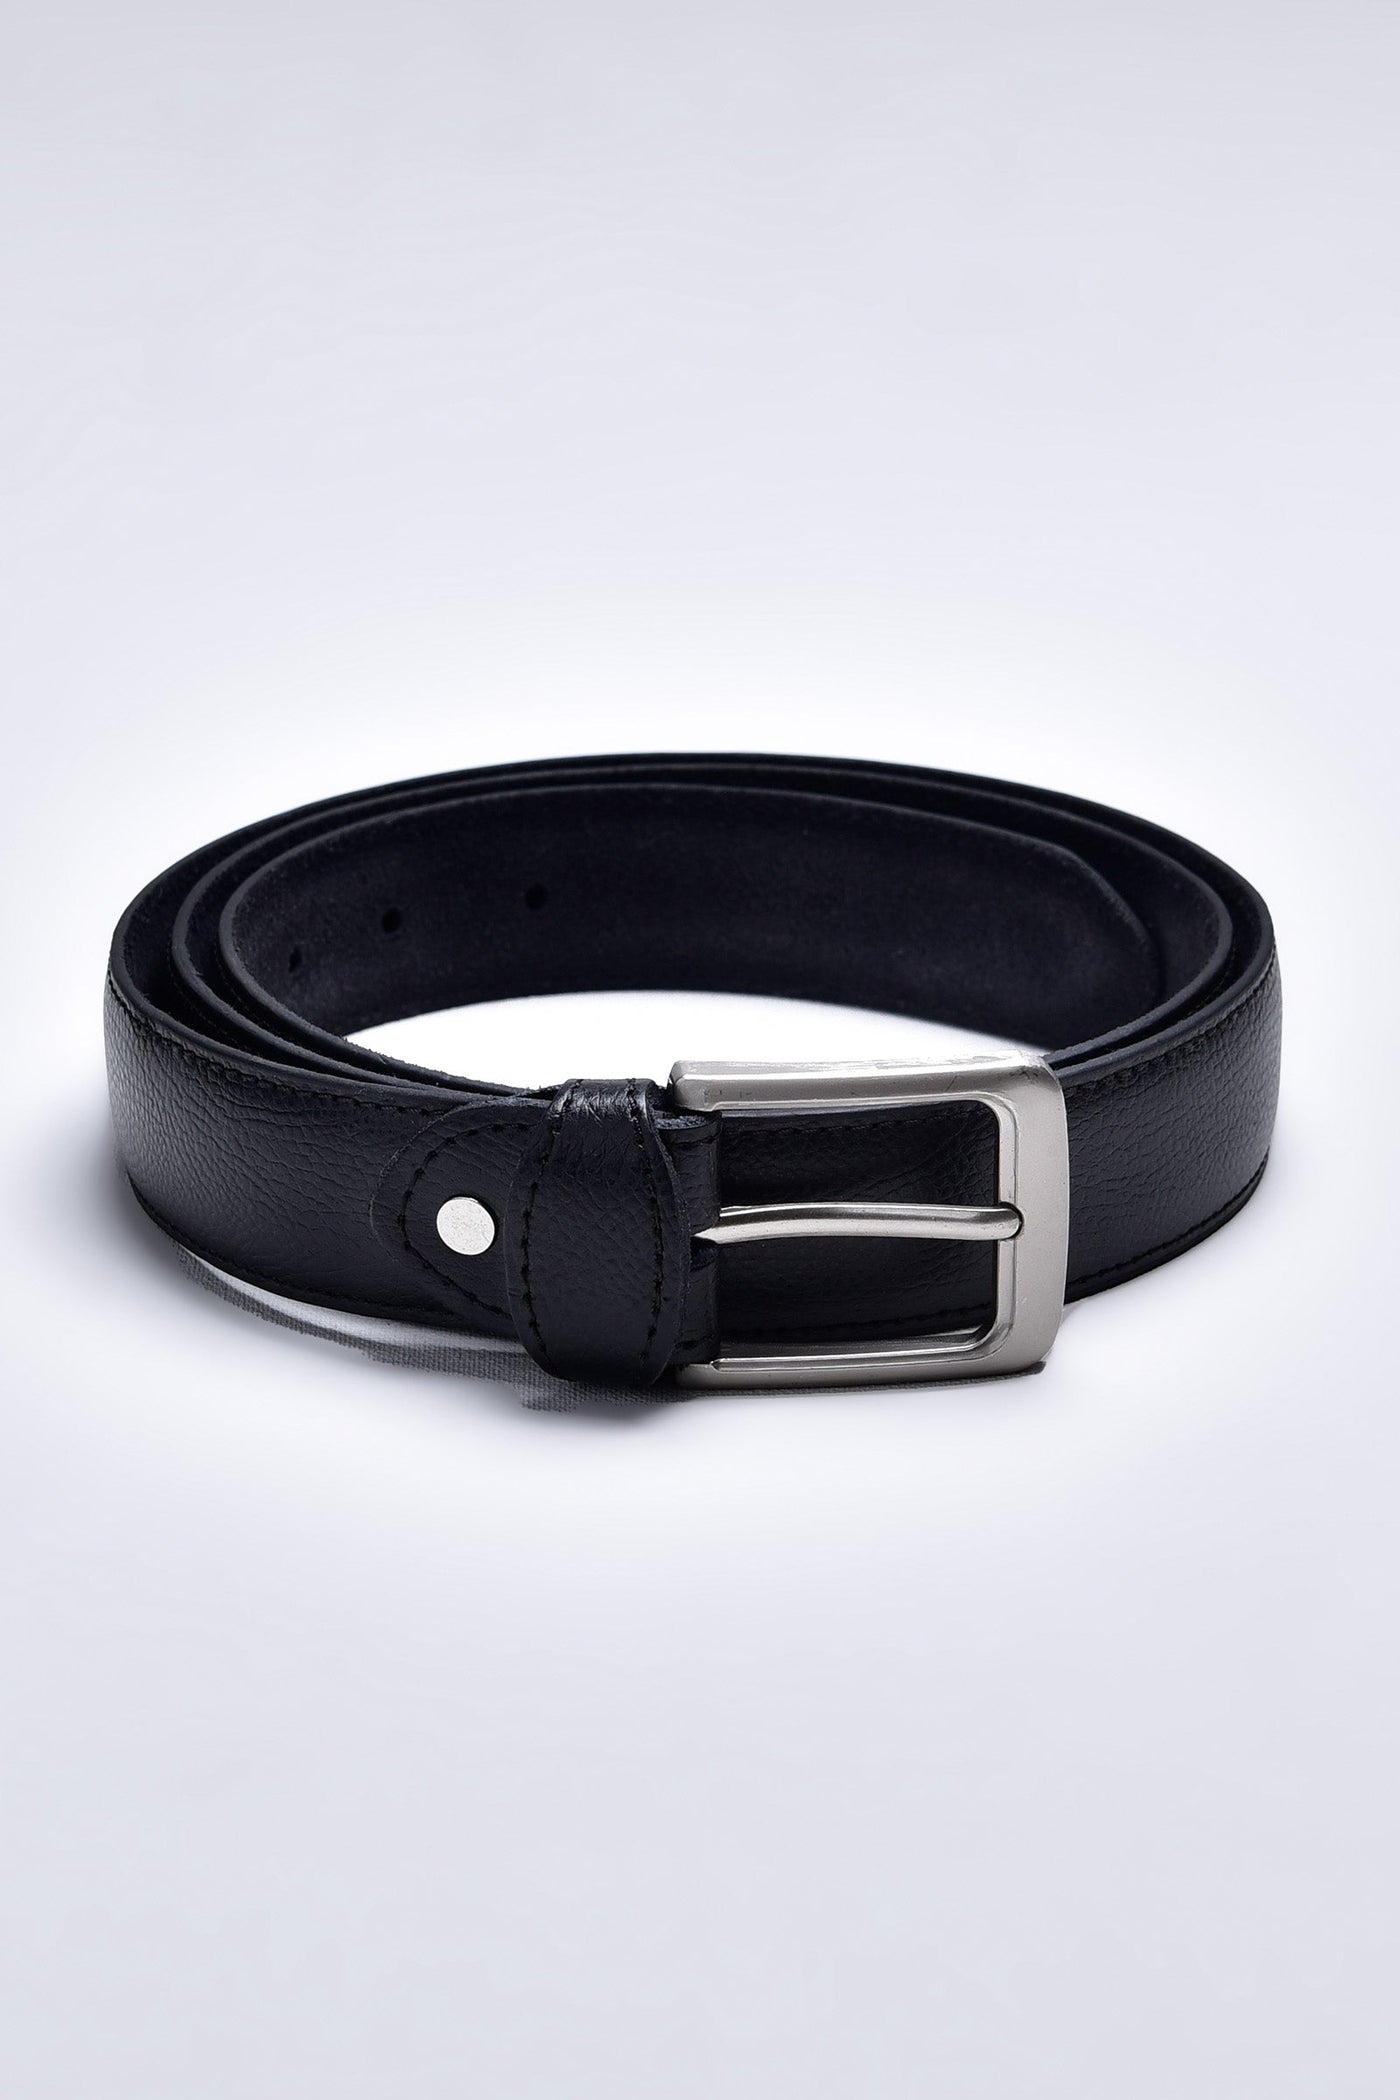 Black Formal Belt-STM60